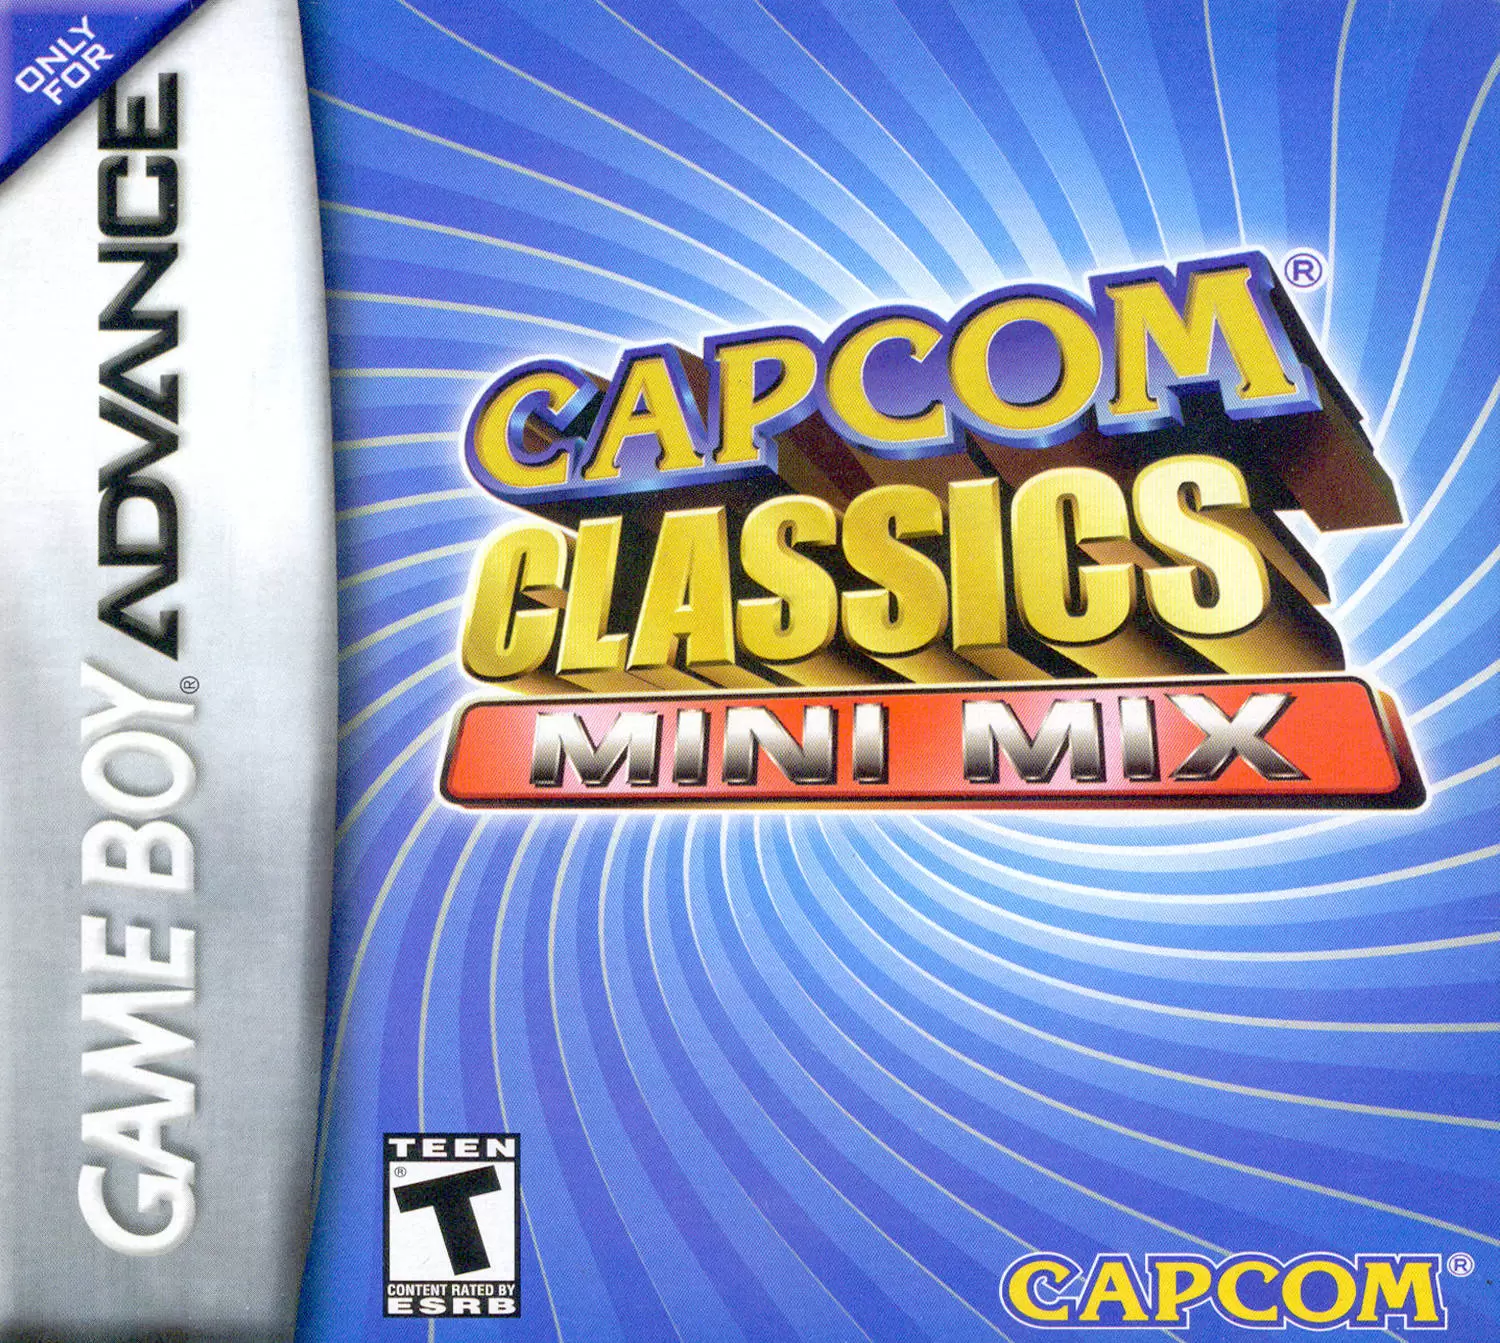 Game Boy Advance Games - Capcom Classics Mini Mix